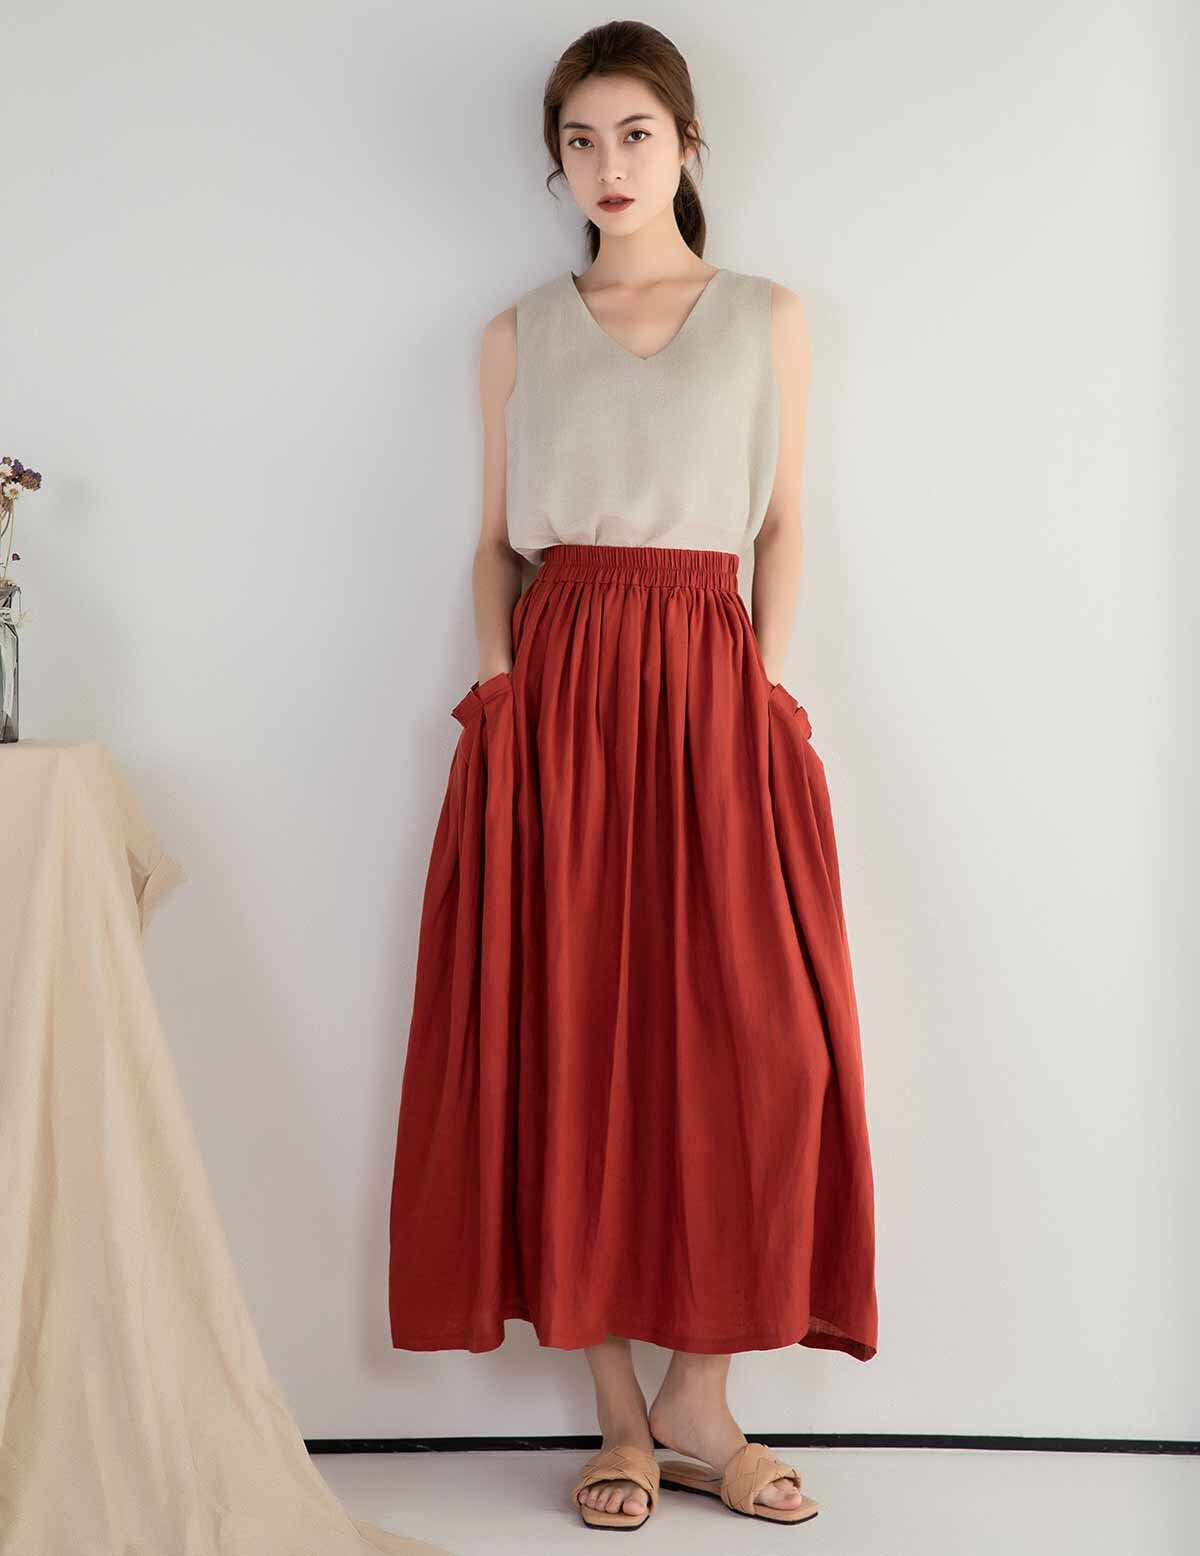 Linen skirt Casual Elastic waist Linen Maxi skirt with | Etsy